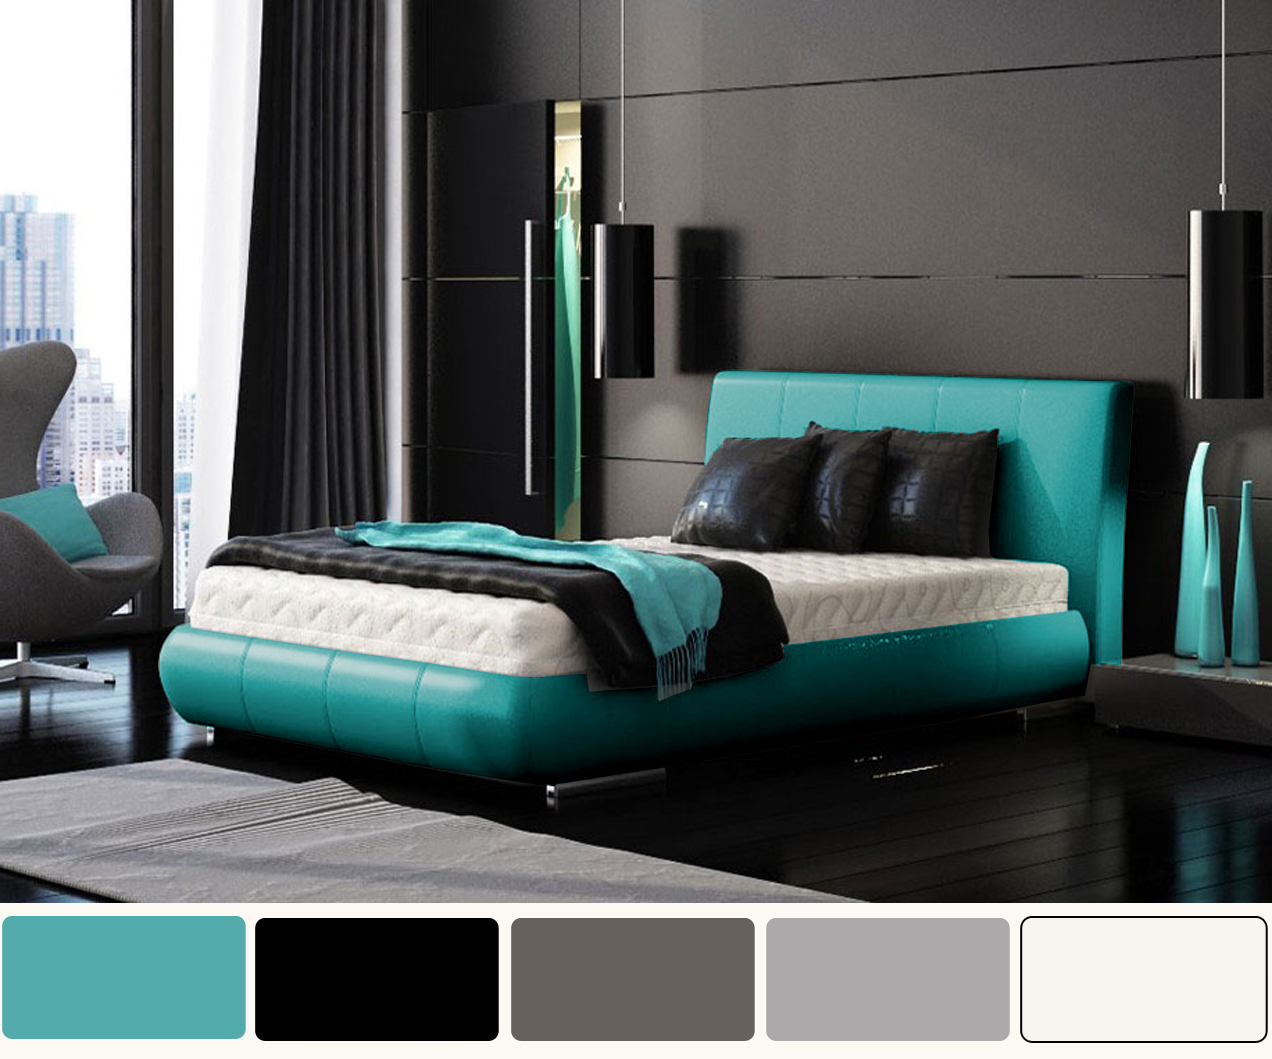 Black White And Turquoise Bedroom Idea Apartment Interior Design